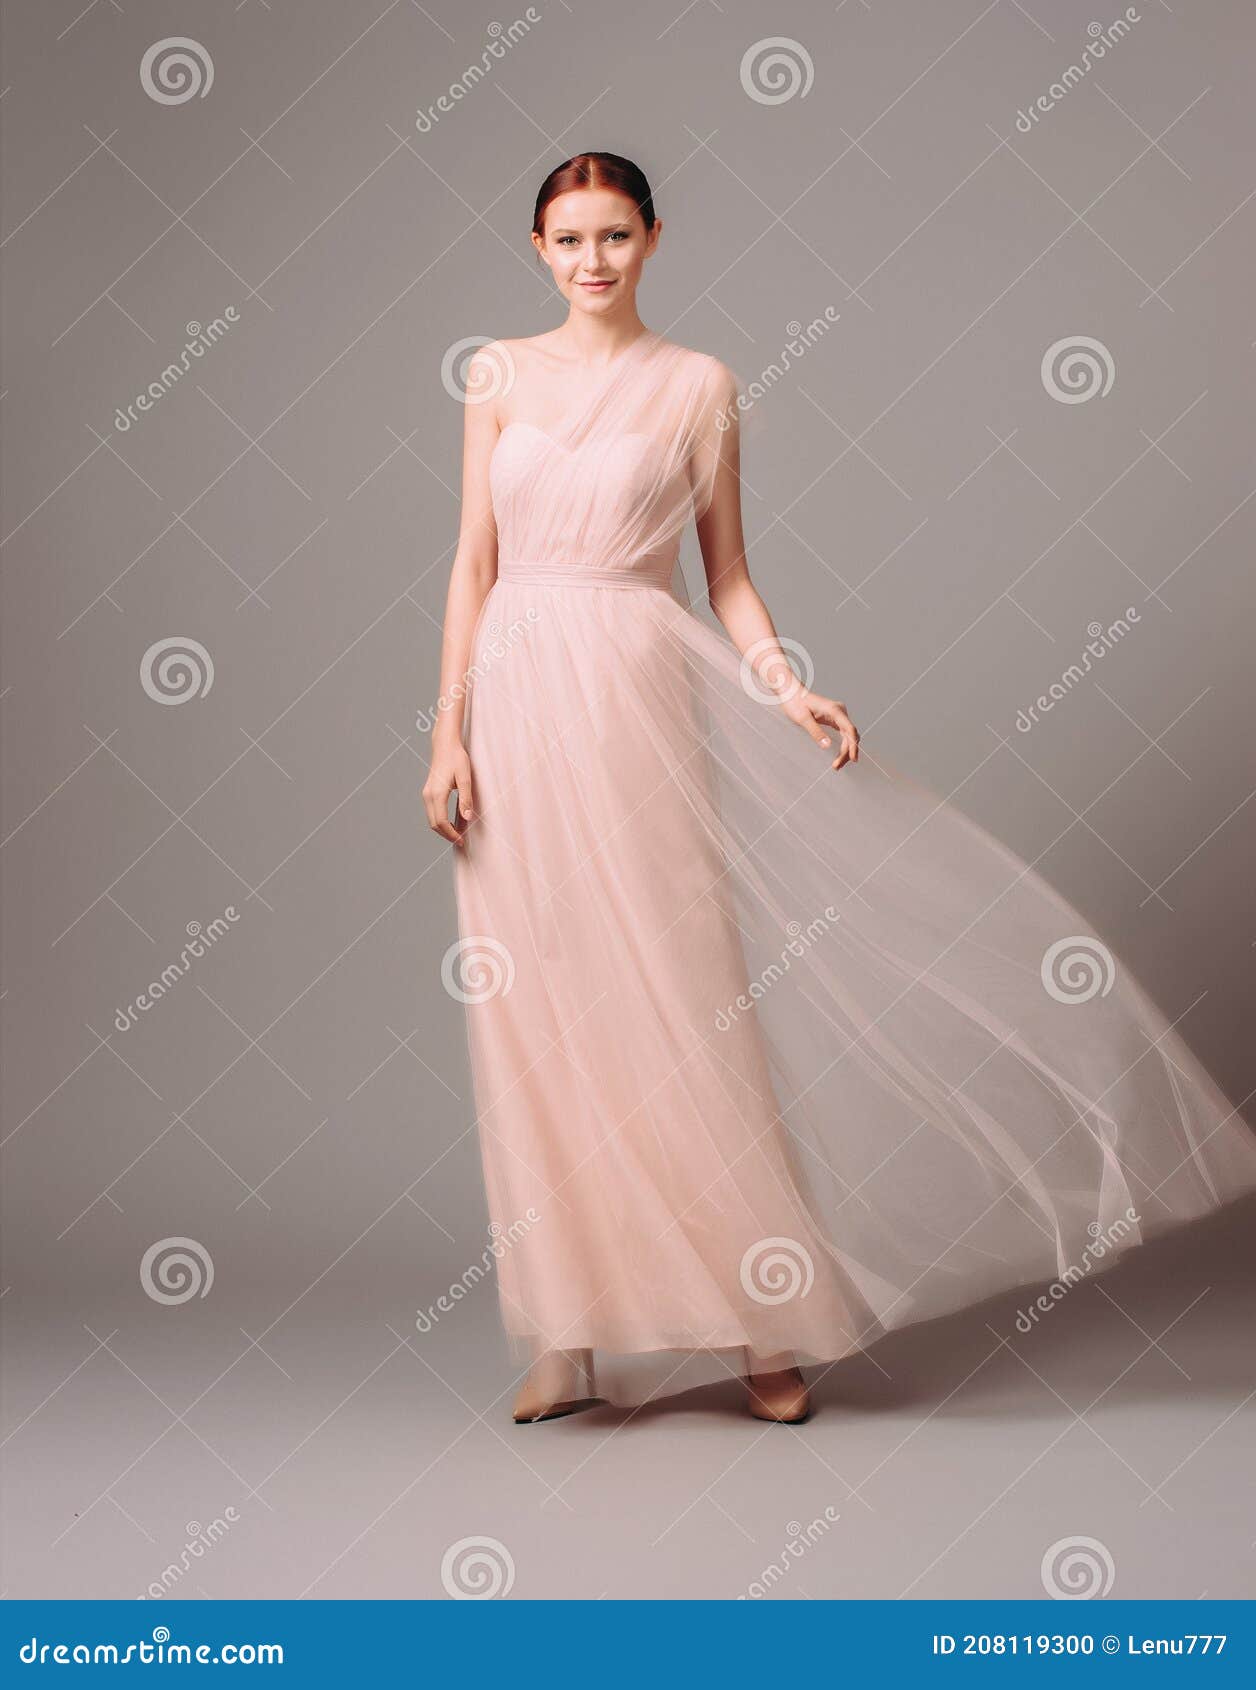 Vestidos De Dama De Honor. Elegante Vestido De Moscato. Hermoso De Noche De Gasa Rosa. Retrato De De La Joven Muje Foto de archivo - Imagen de pelo: 208119300